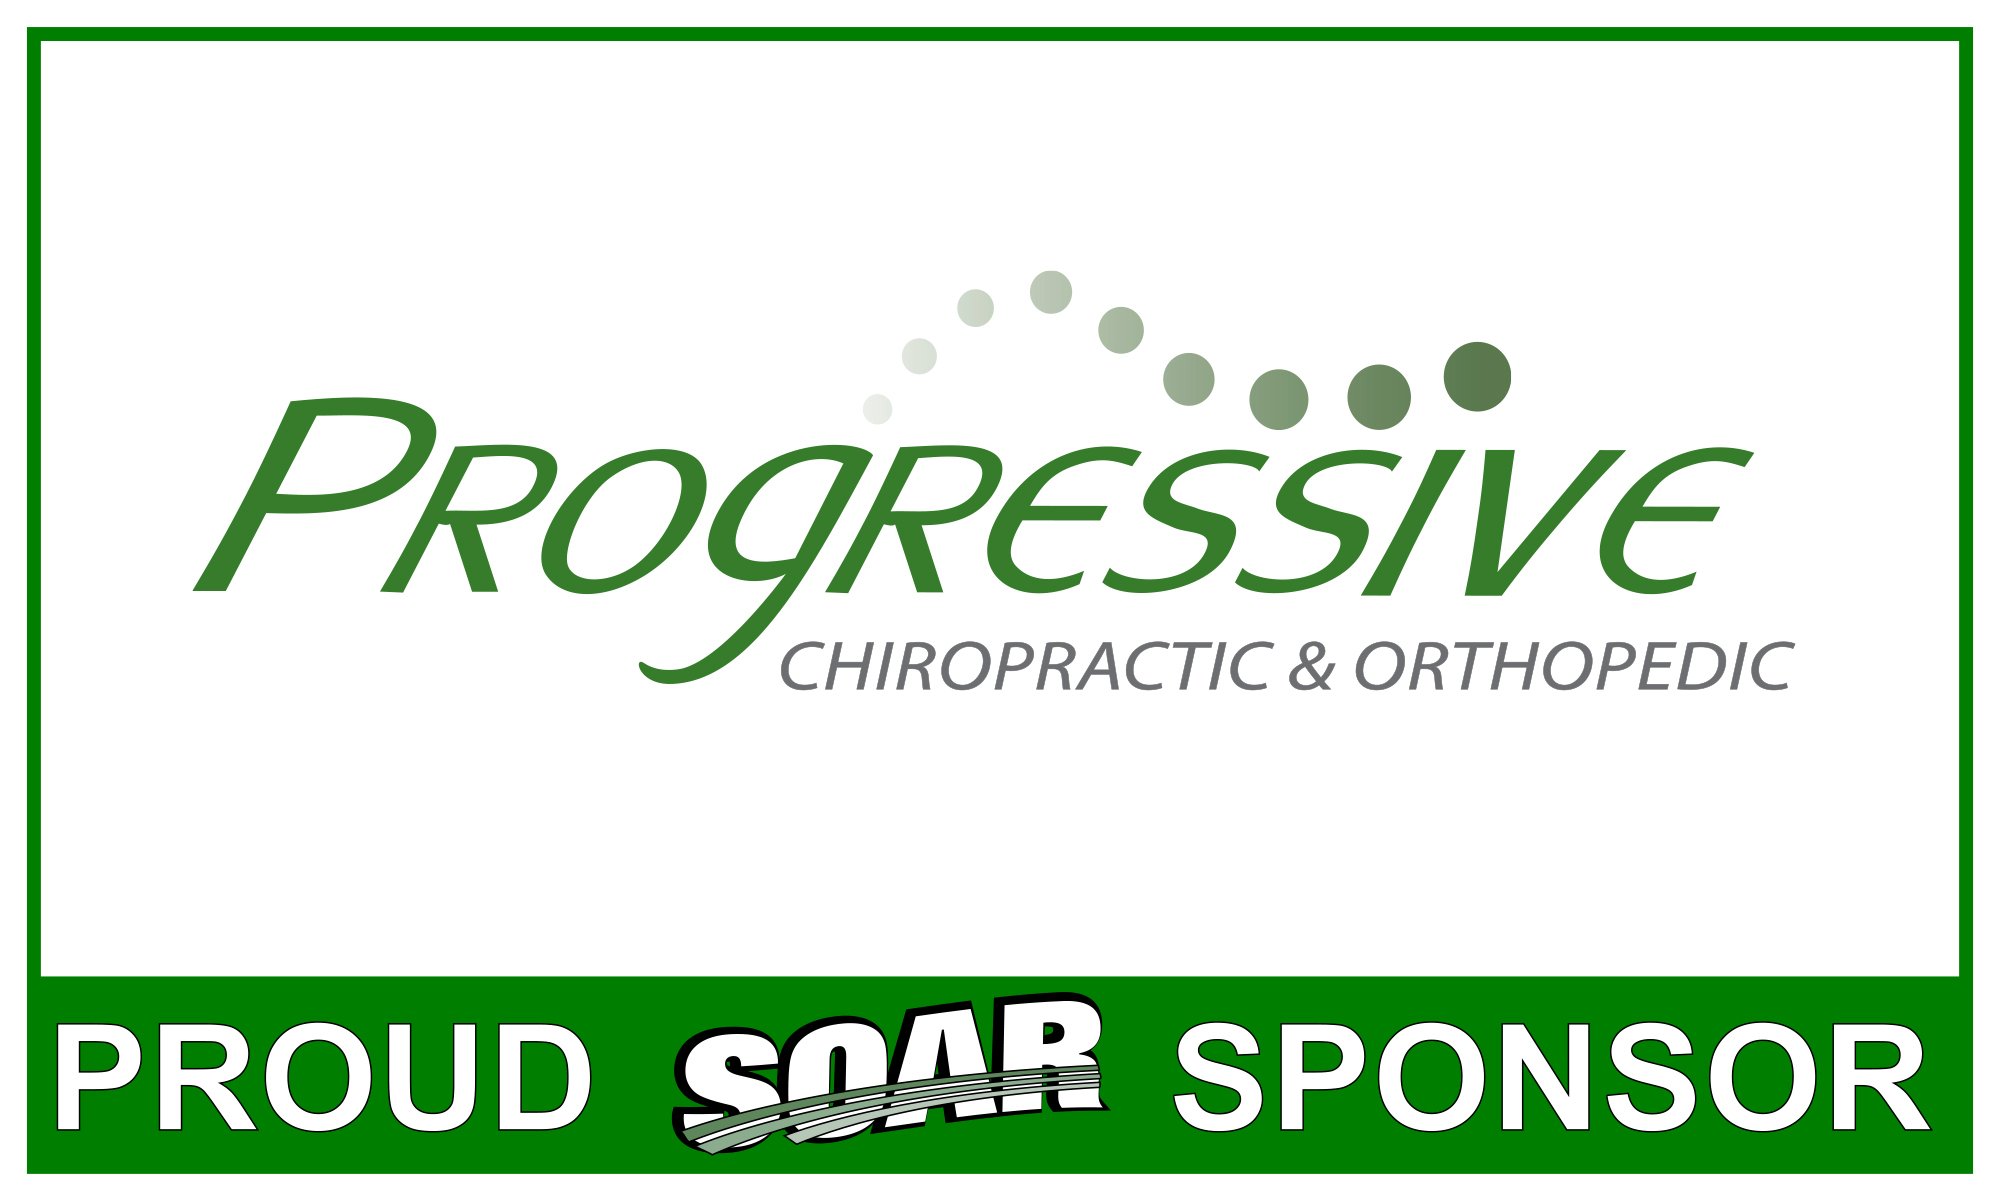 Progressive Chiro sponsor banner.jpg